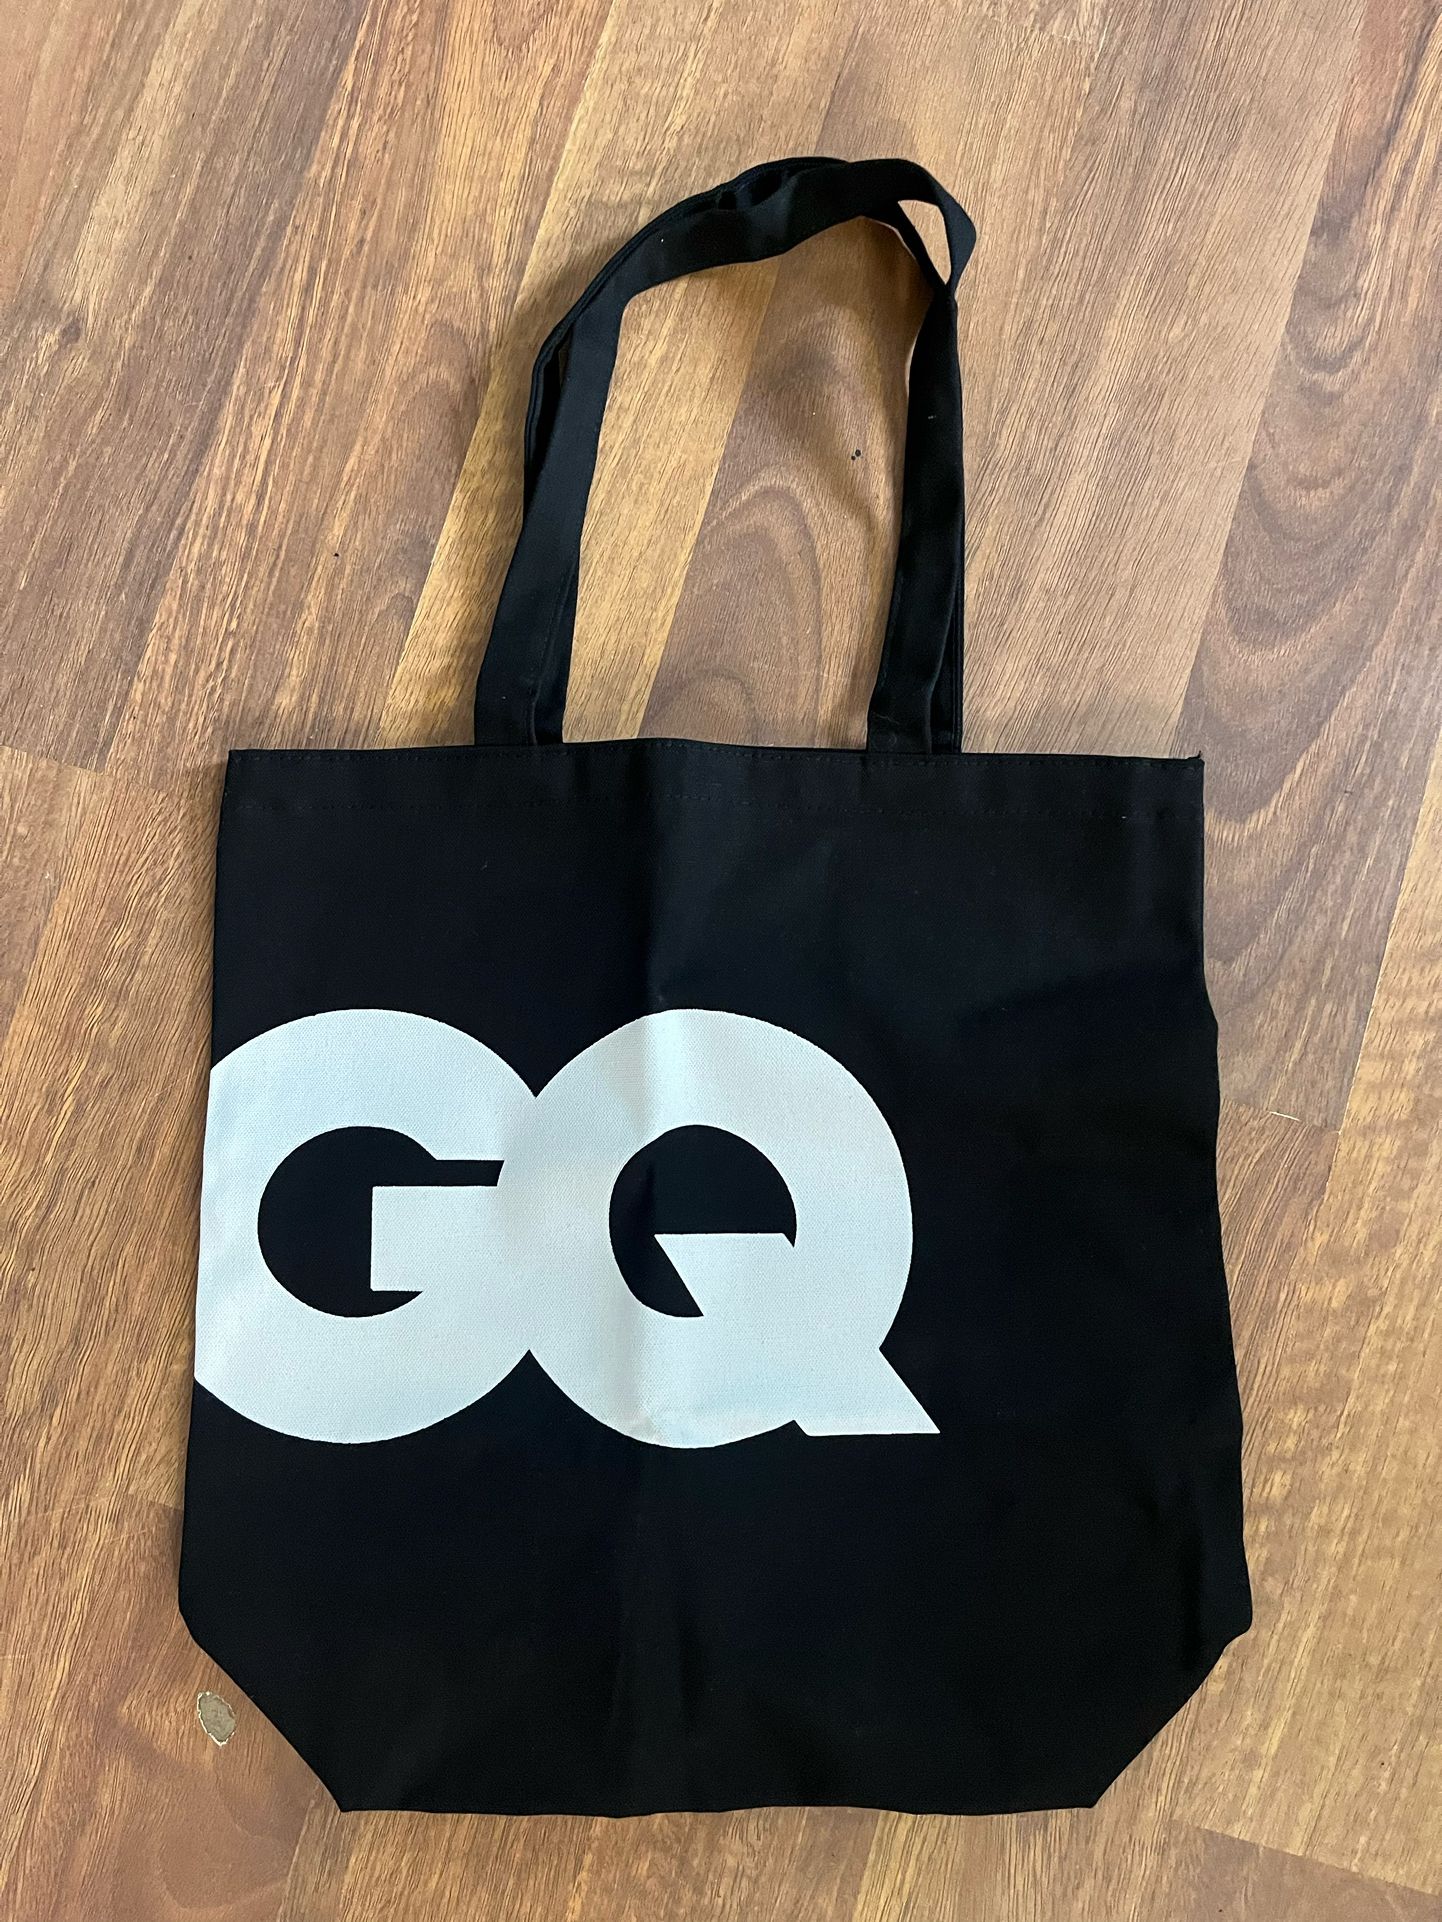 GQ Magazine Black-And-White Tote Bag Brand New